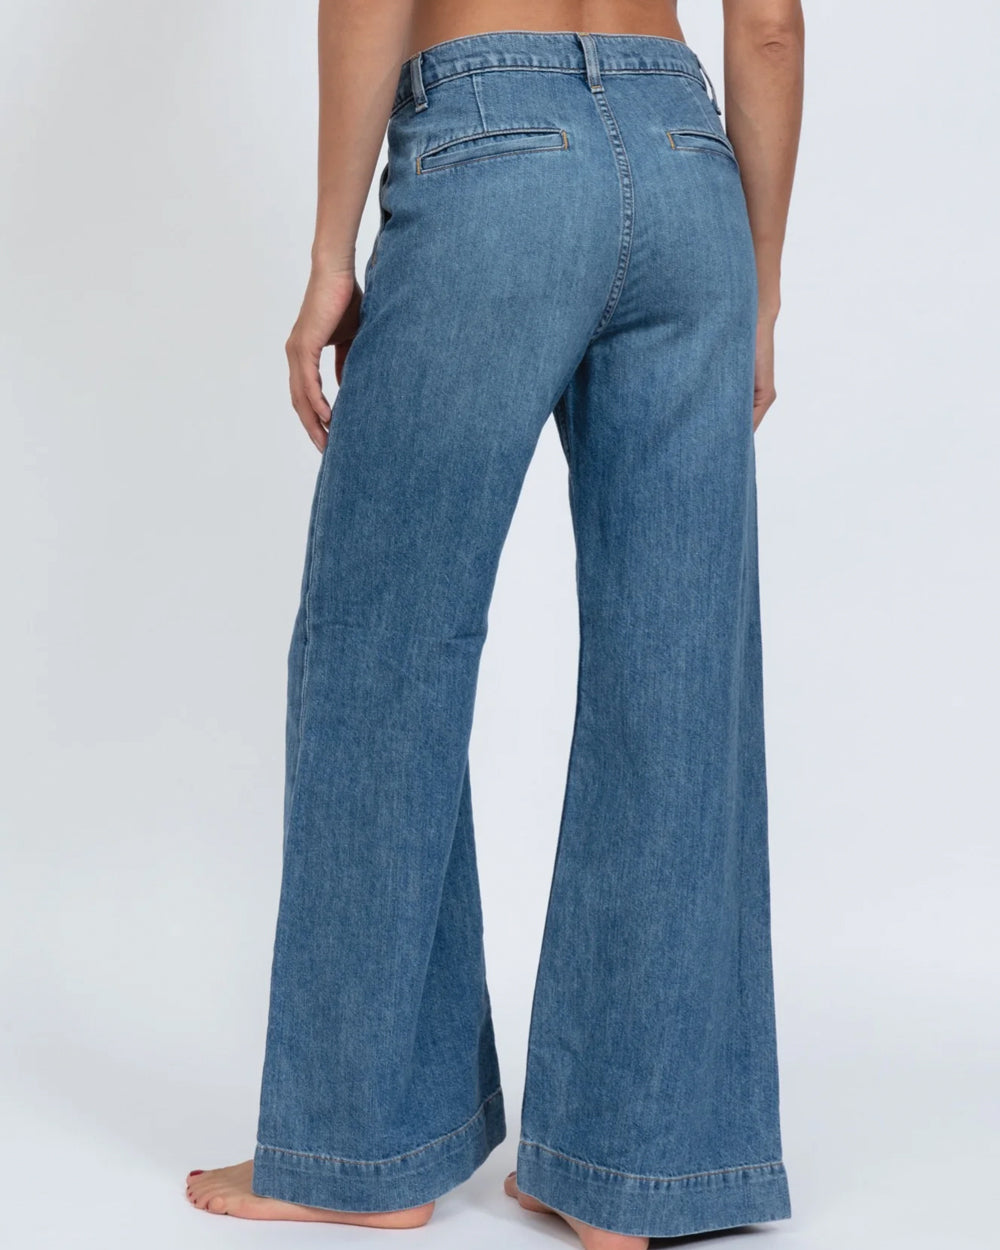 Trouser Jean in Rambler